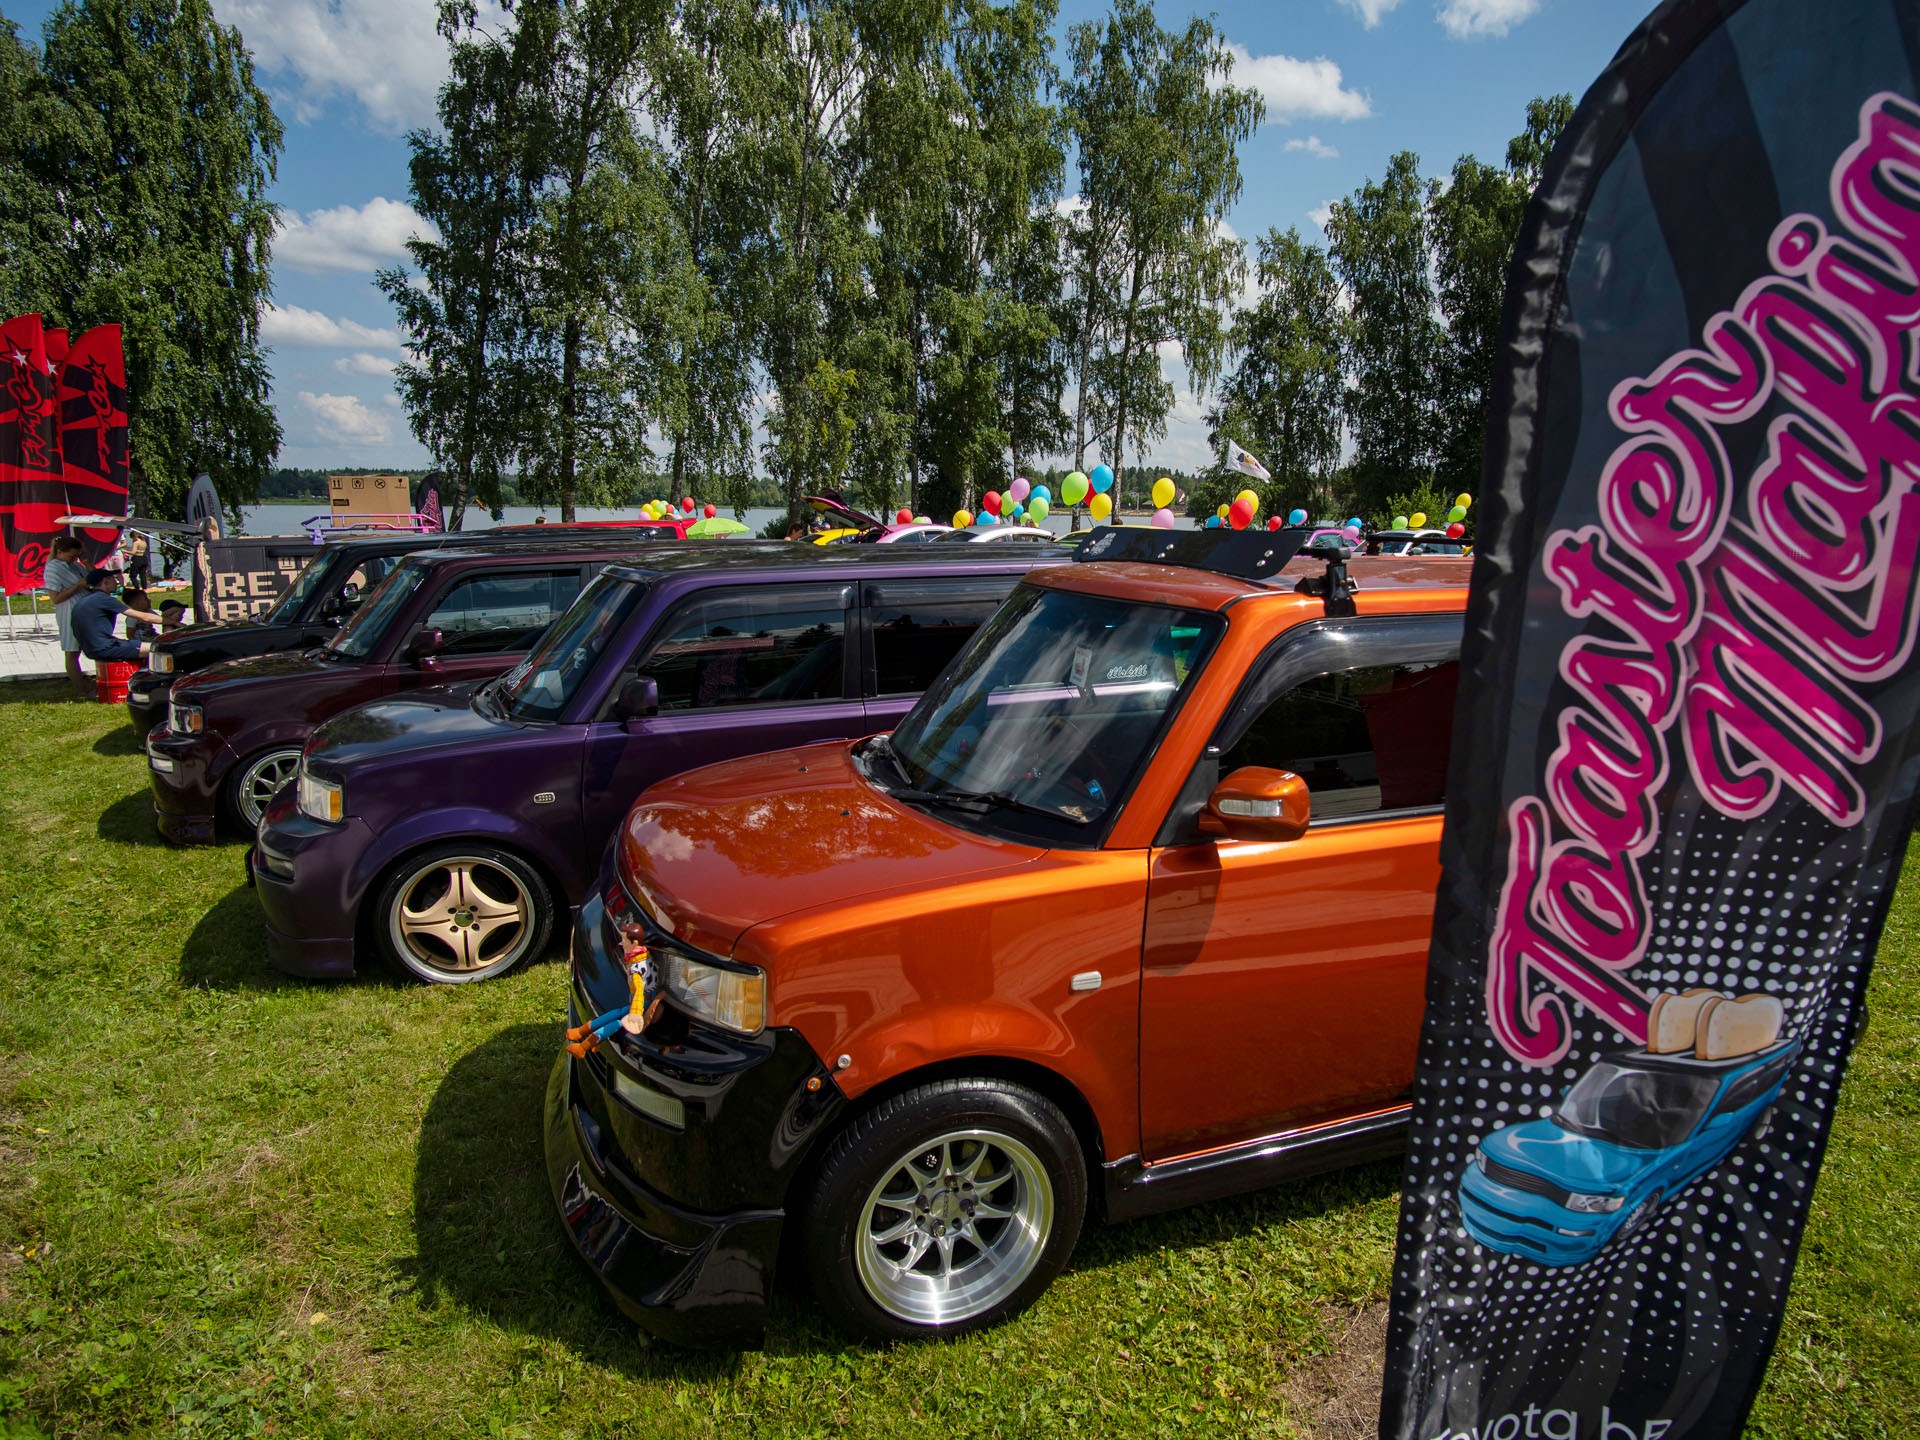 7-й автомобильный фестиваль Tuning Open Fest прошел в Подмосковье